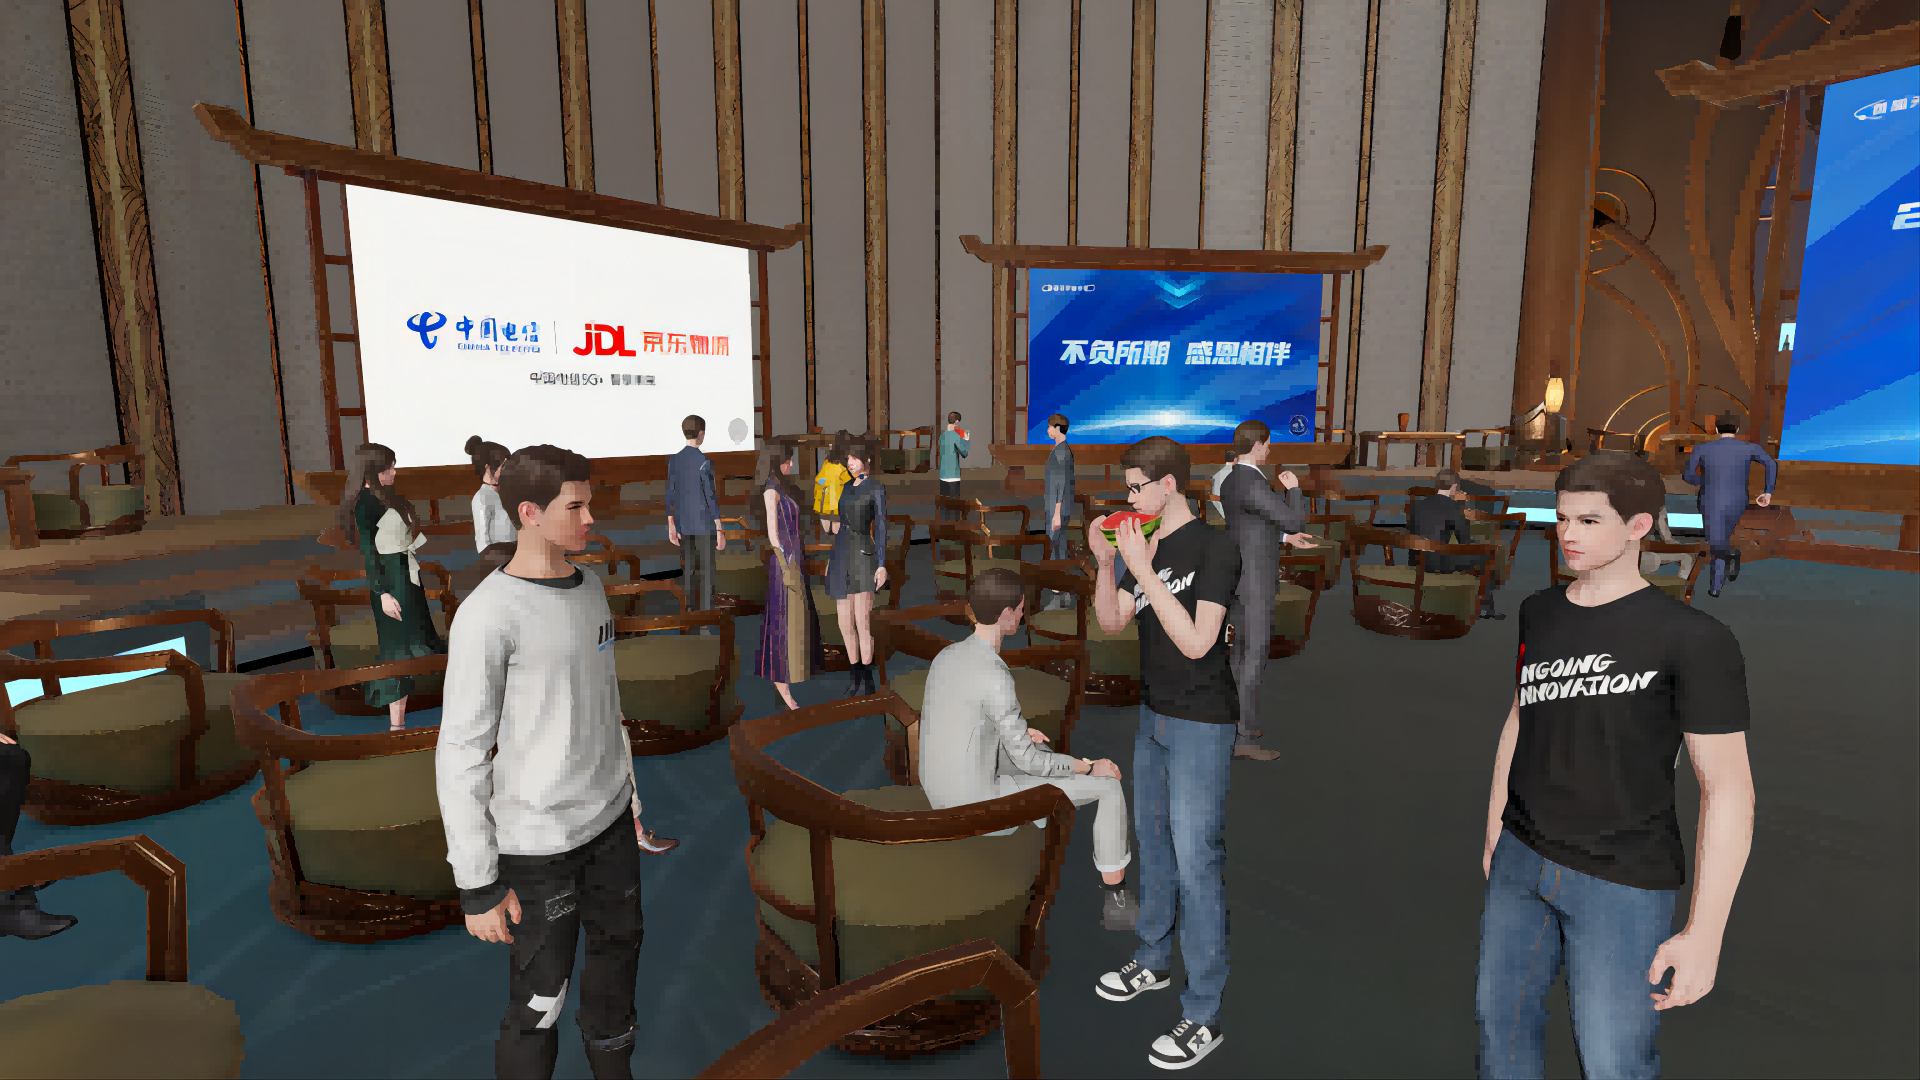 图片展示了一个虚拟现实场景，里面有多个三维角色，似乎在一个会议室内，背景有中文广告牌和屏幕。